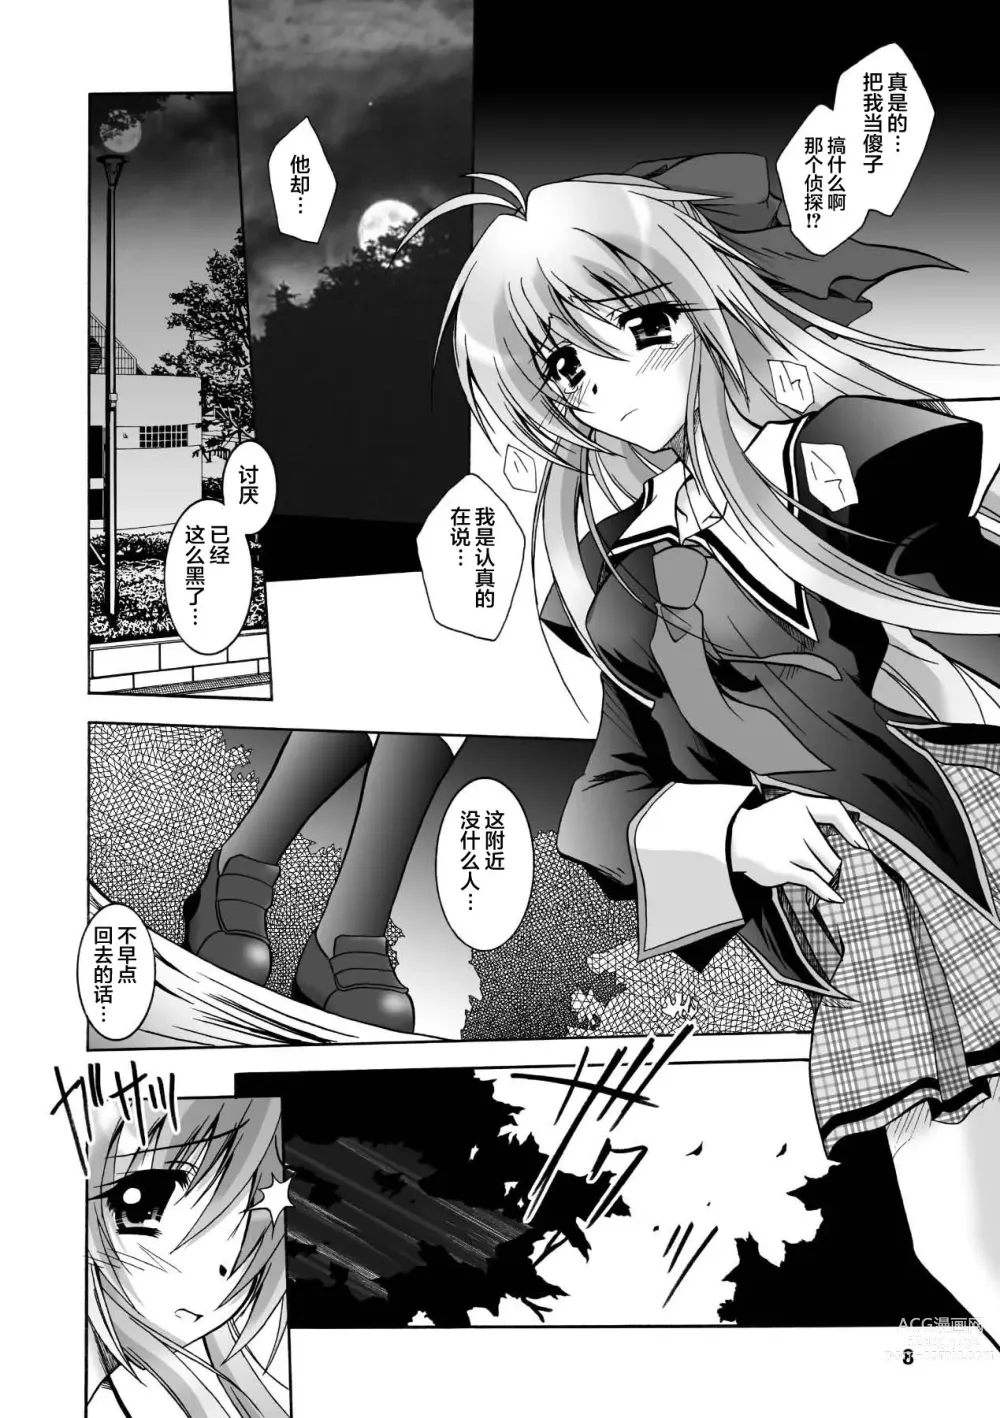 Page 8 of manga Matantei Toudou Shizuka no Inyou Jikenbo